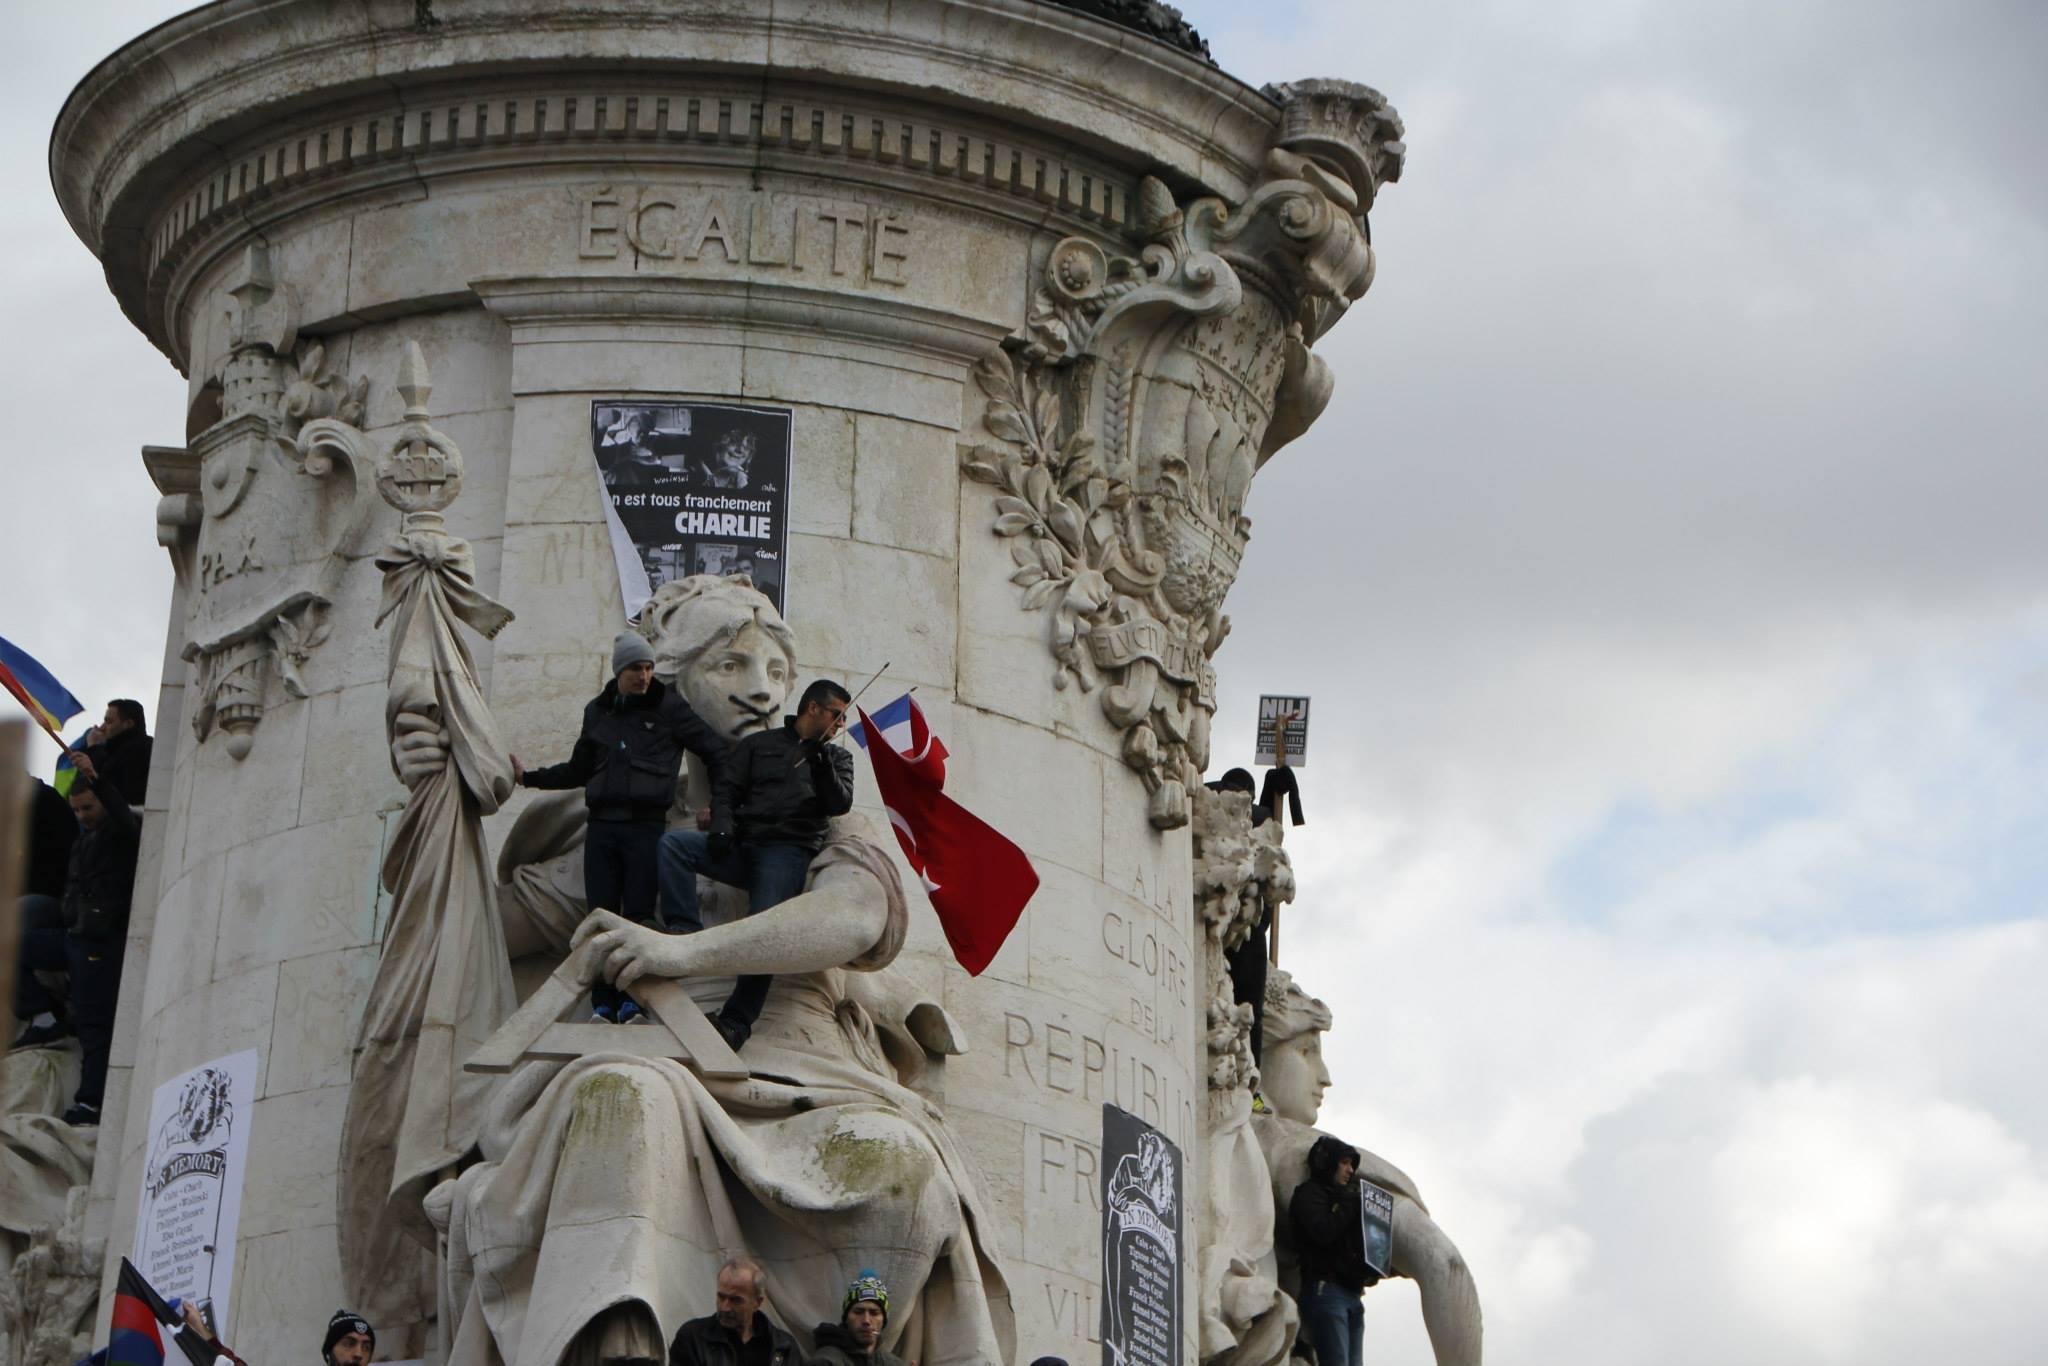 #JeSuisCharlie - Place de la Répubique - Manifestation Paris 11 janvier 2015 - Photo Mitra Etemad - Tous droits réservés / Reproduction interdite.